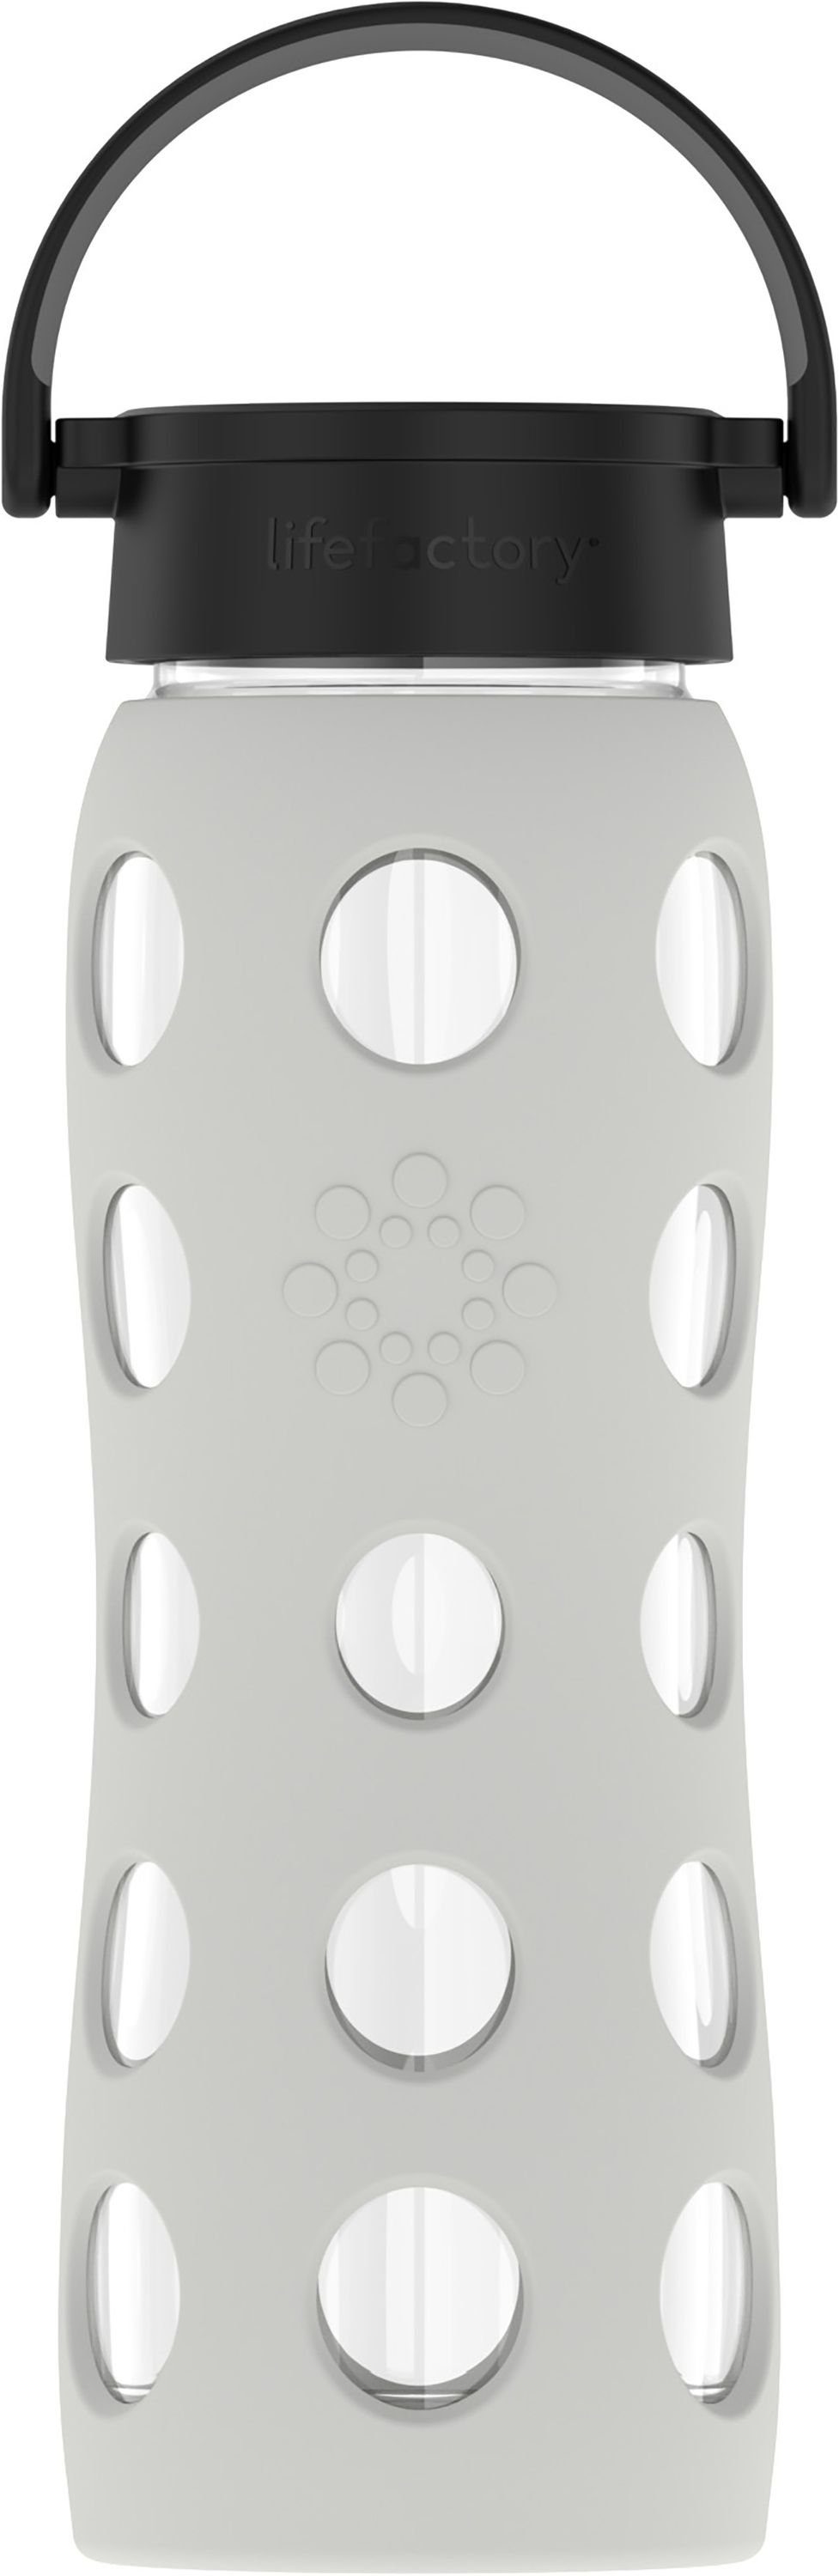 Lifefactory Babyflasche, Lifefactory Glas Flasche mit Silikonhülle und Schraubverschluss, 650ml Cool Grey